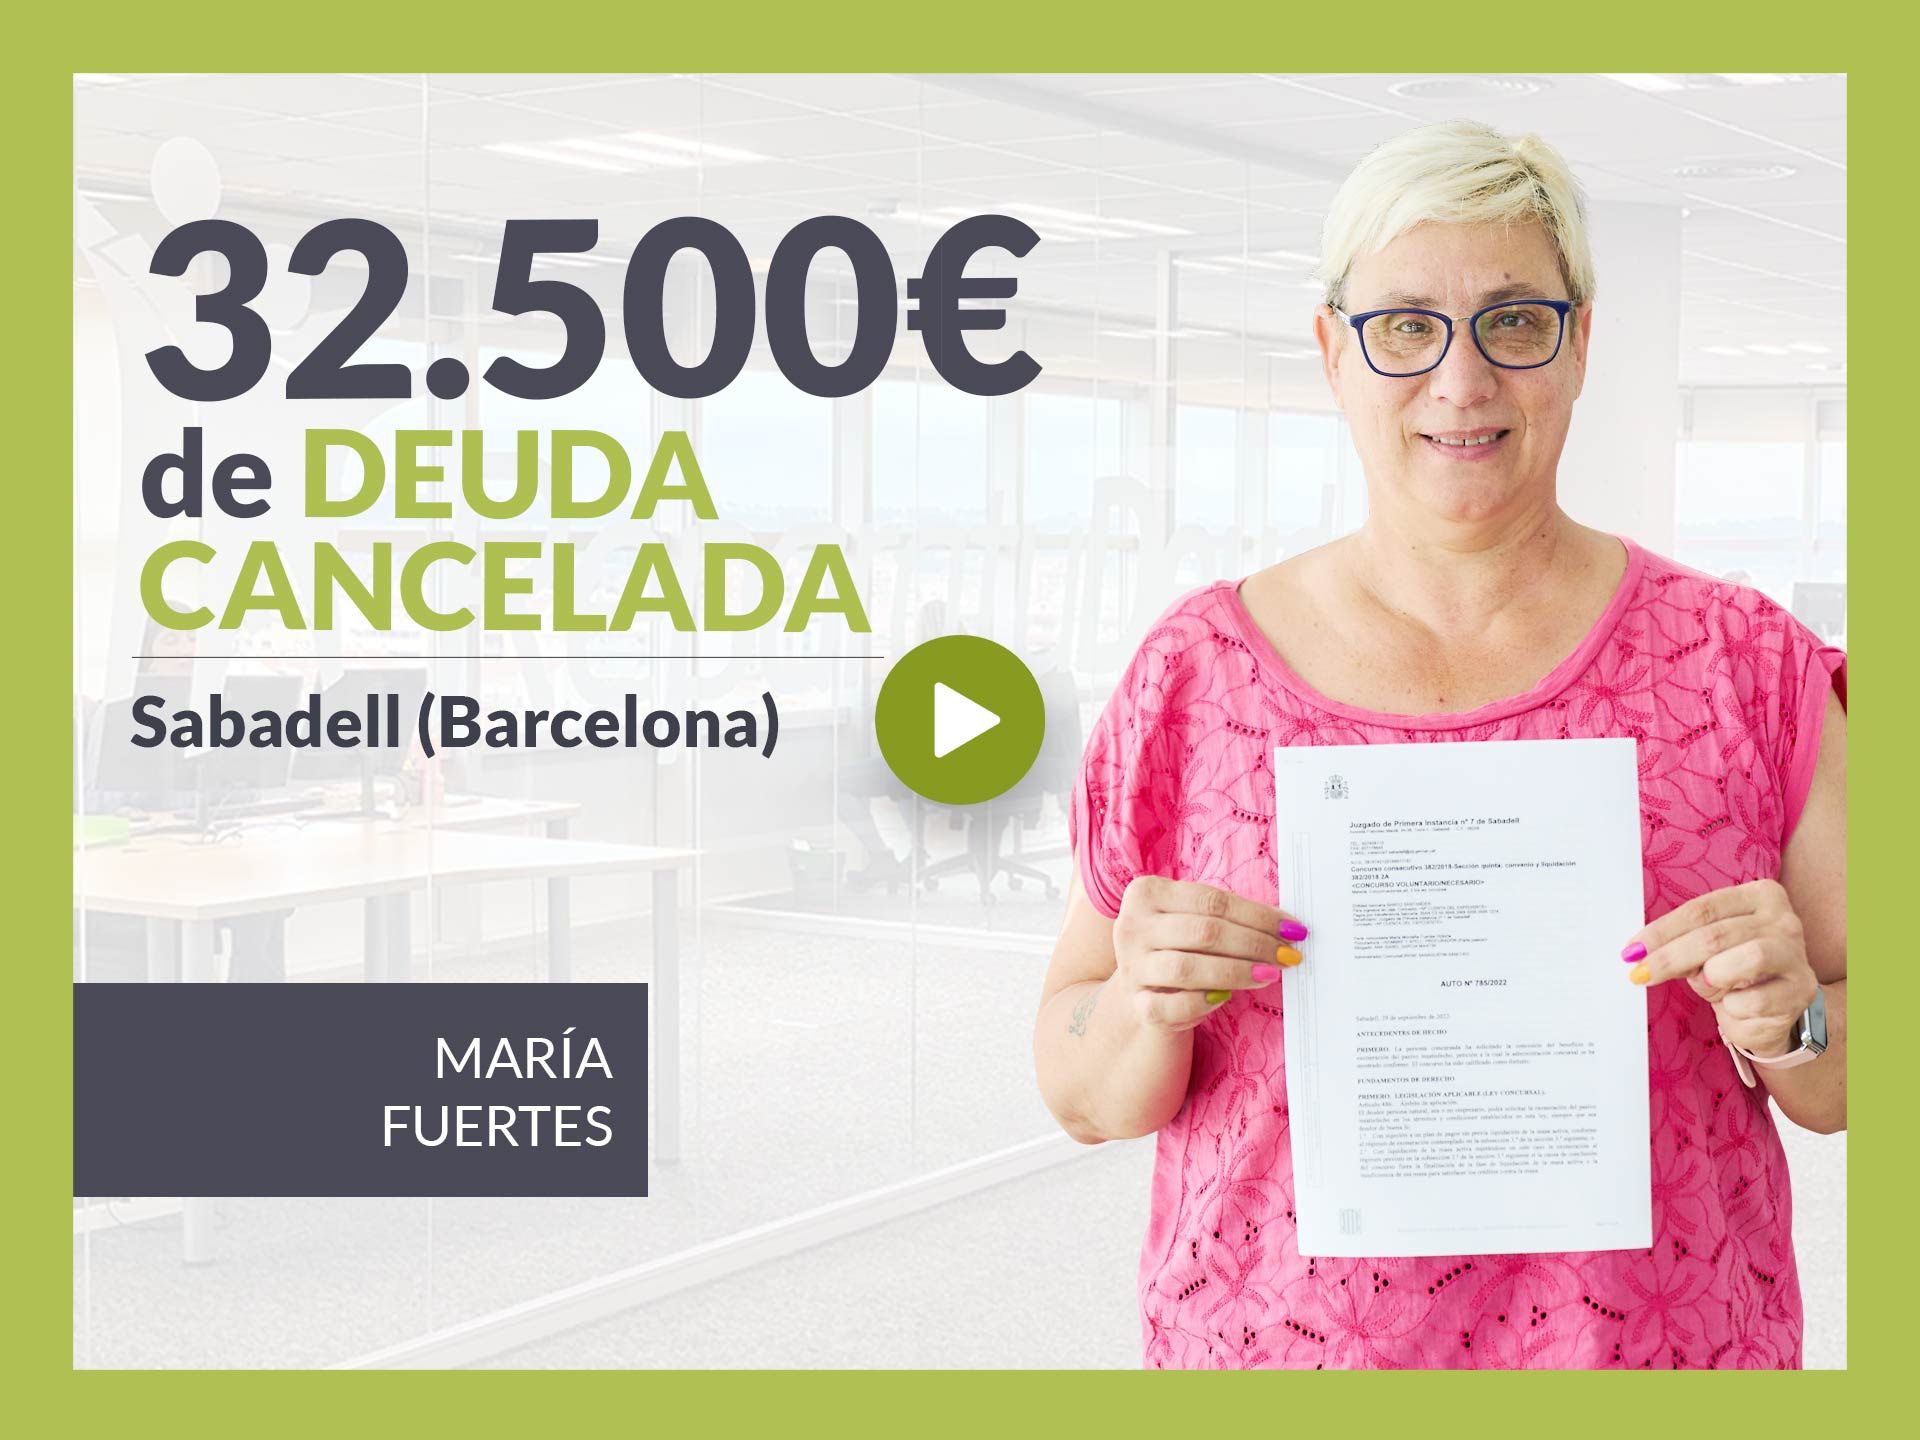 Repara tu Deuda Abogados cancela 32.500 ? en Sabadell (Barcelona) con la Ley de Segunda Oportunidad